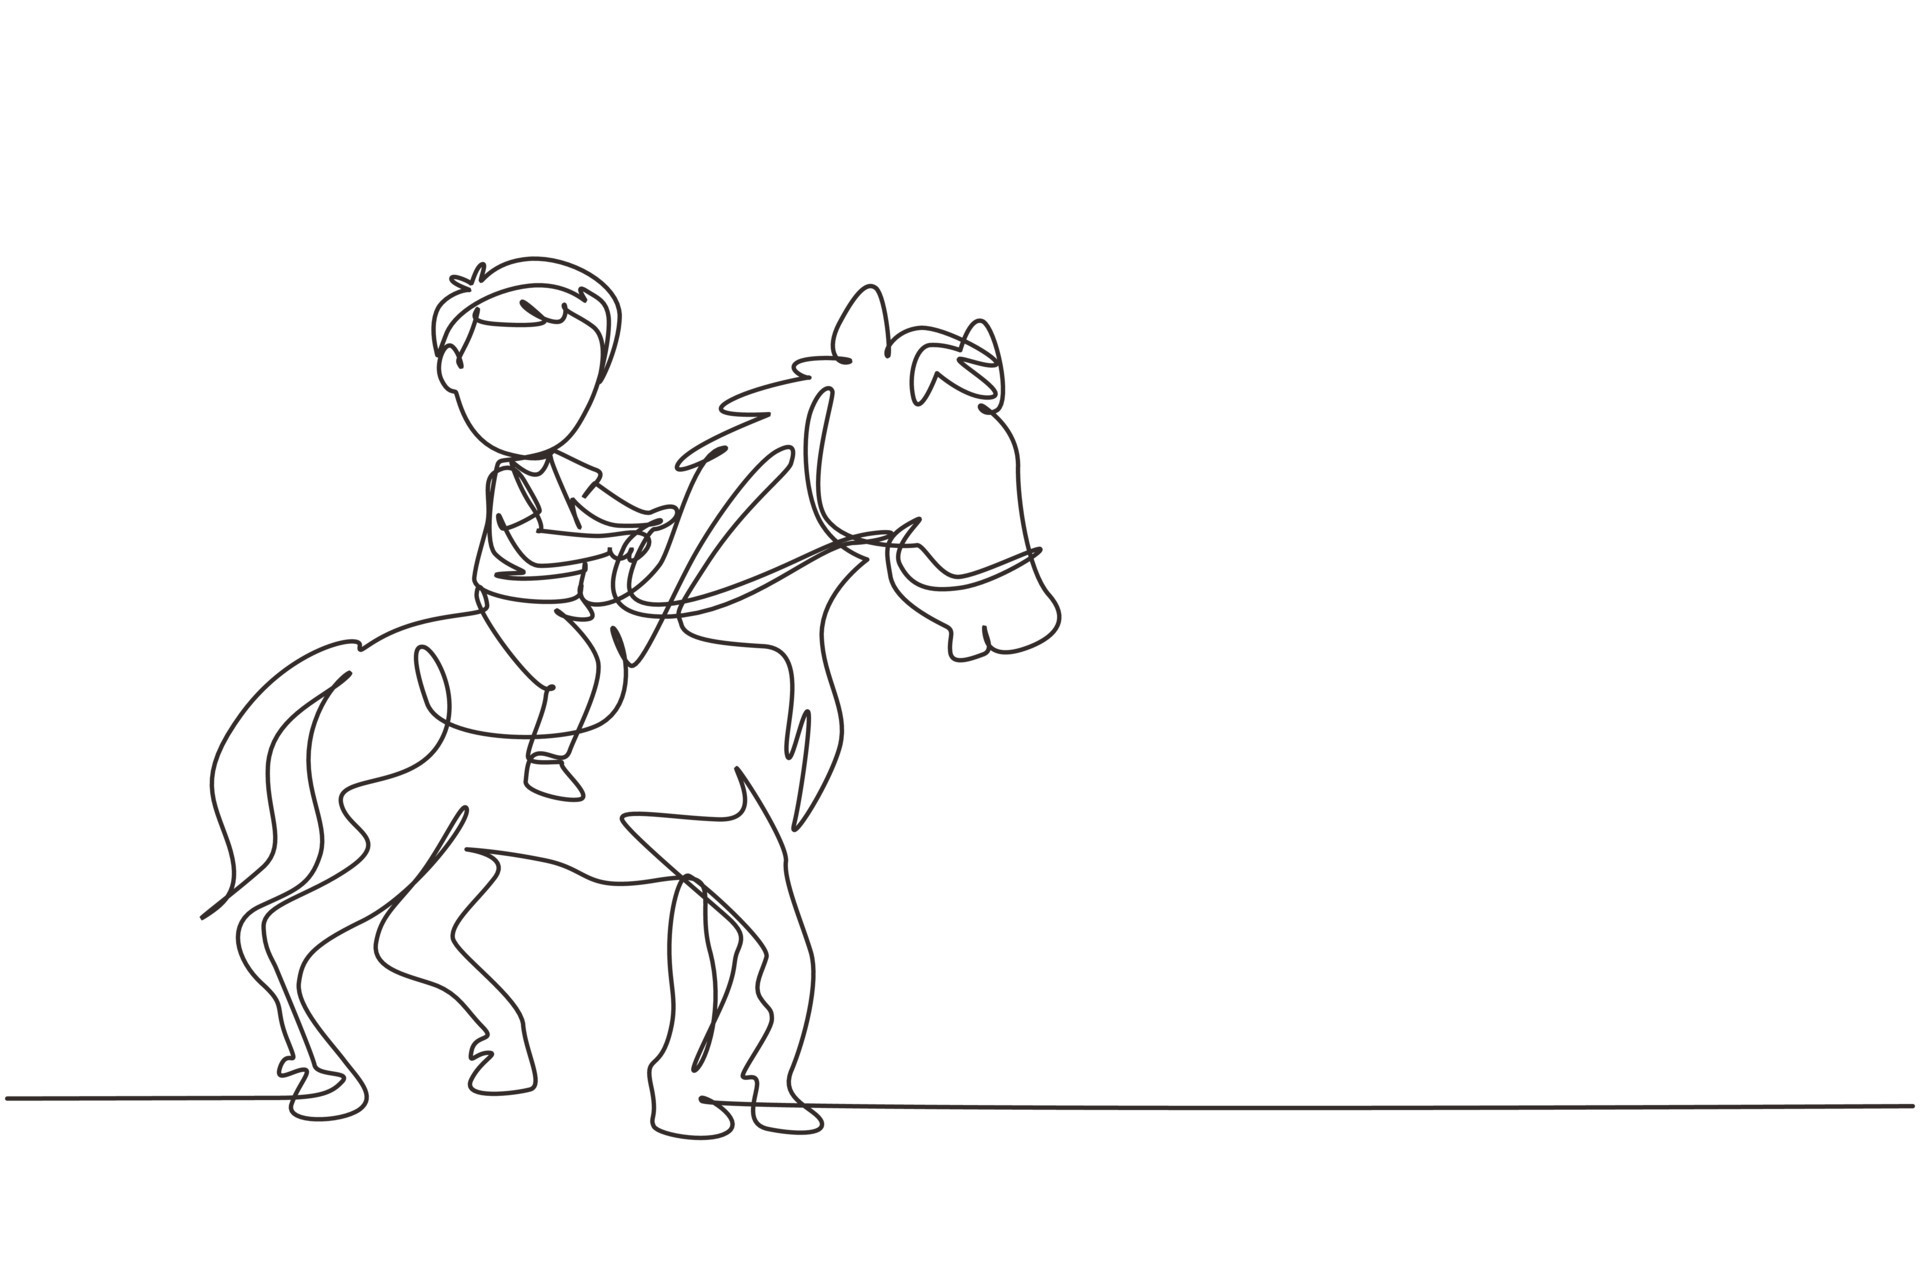 Quer aprender a desenhar cavalos?